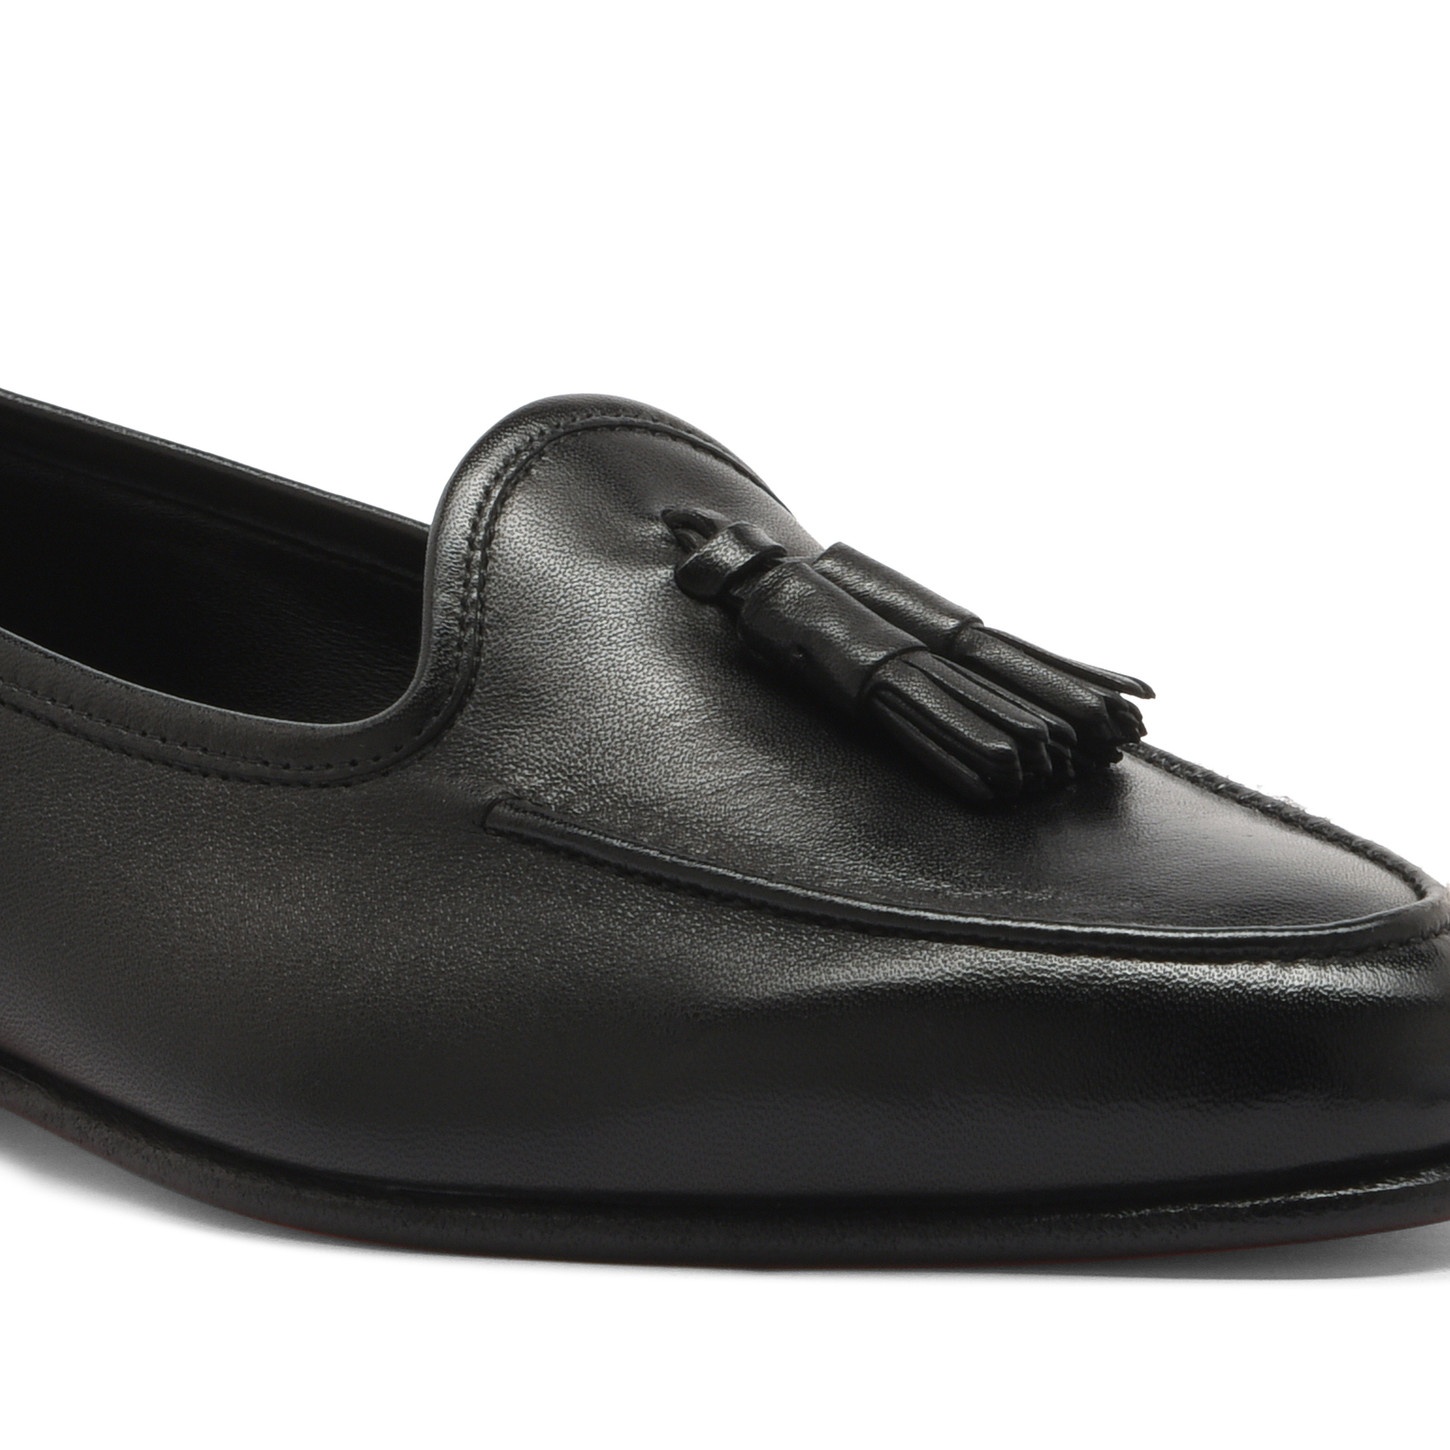 Women's black leather Andrea tassel loafer - 5